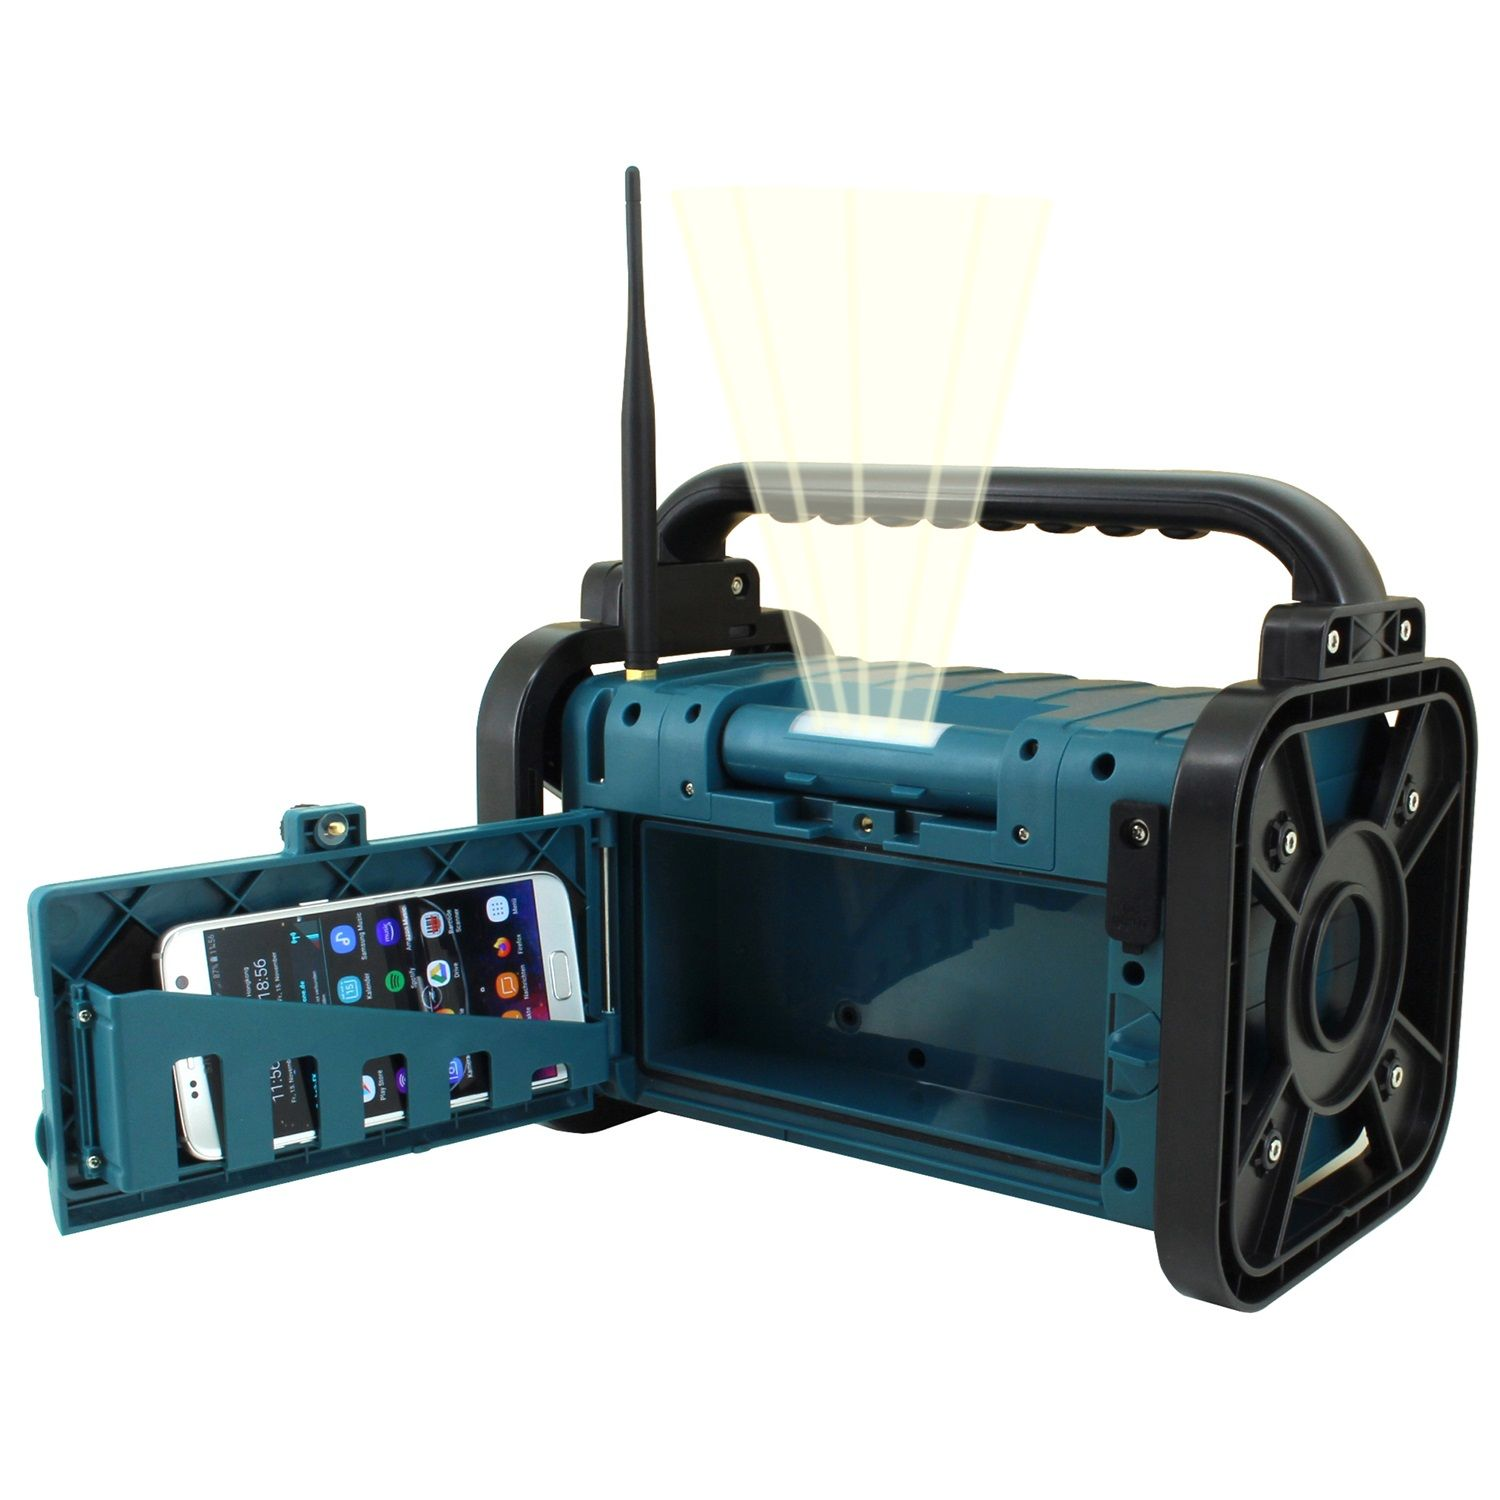 SOUNDMASTER DAB80 Multifunktionsradio, blau FM, AM, DAB+, DAB, DAB+, FM, Bluetooth